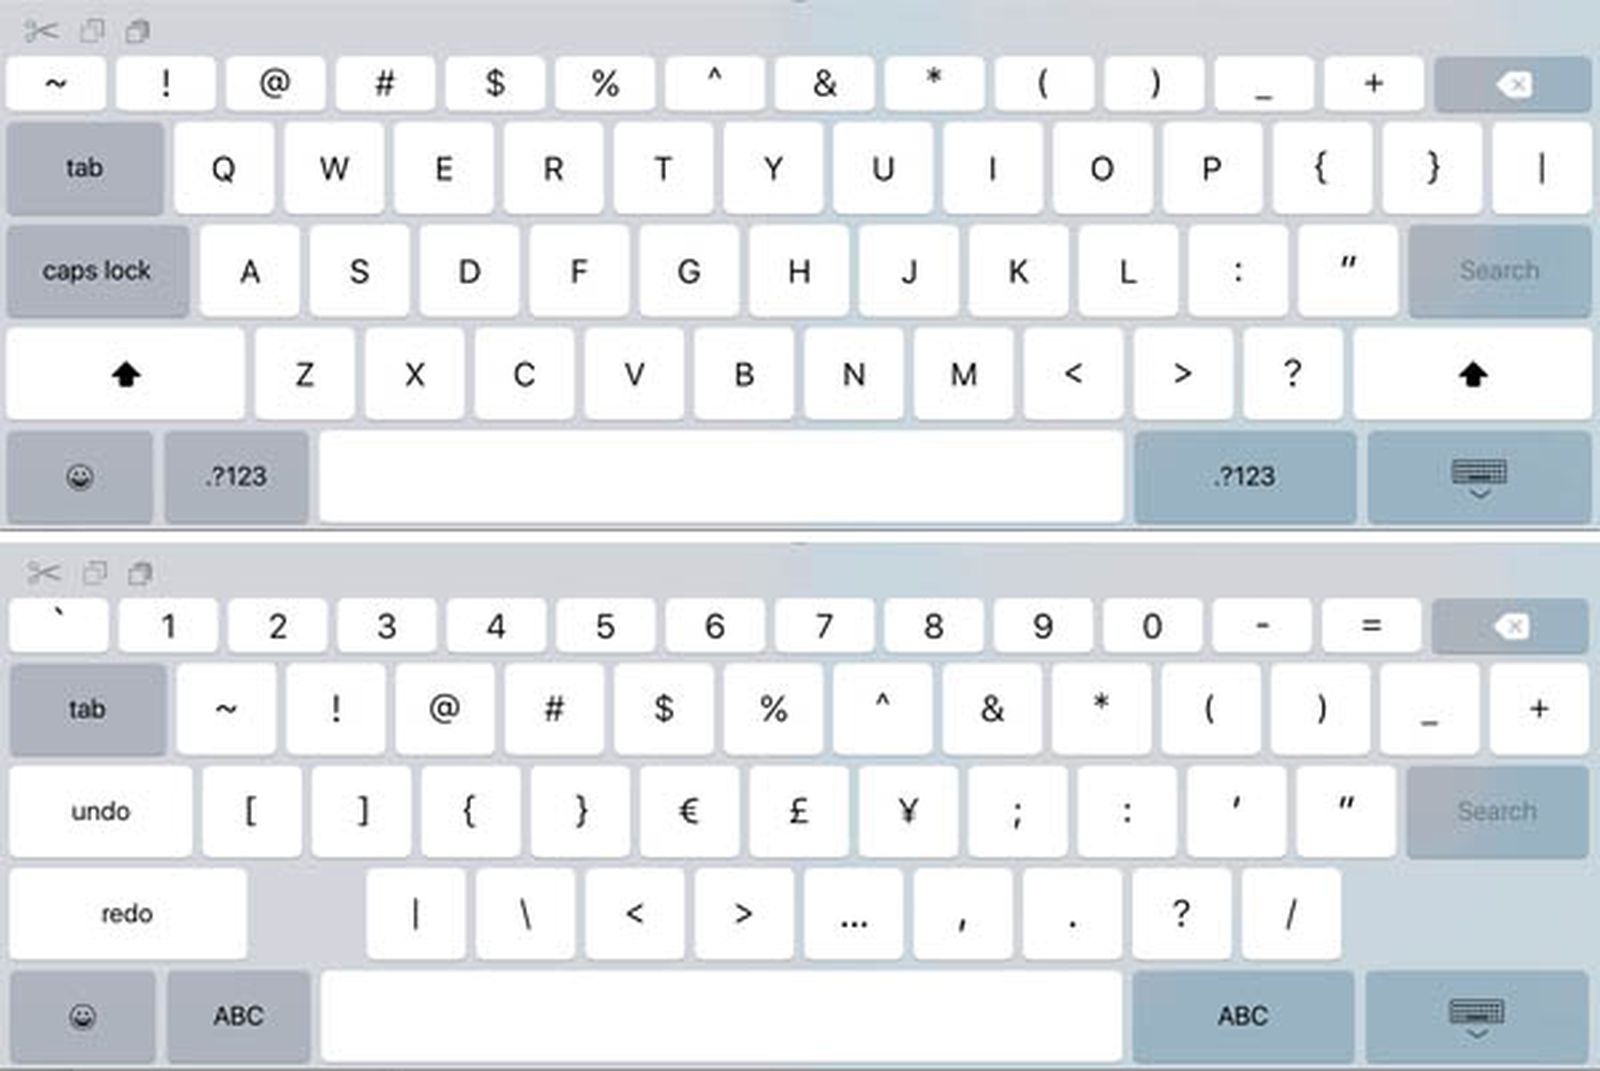 iOS 9 iPad Keyboard Scales to Larger Size, Hinting Towards 'iPad